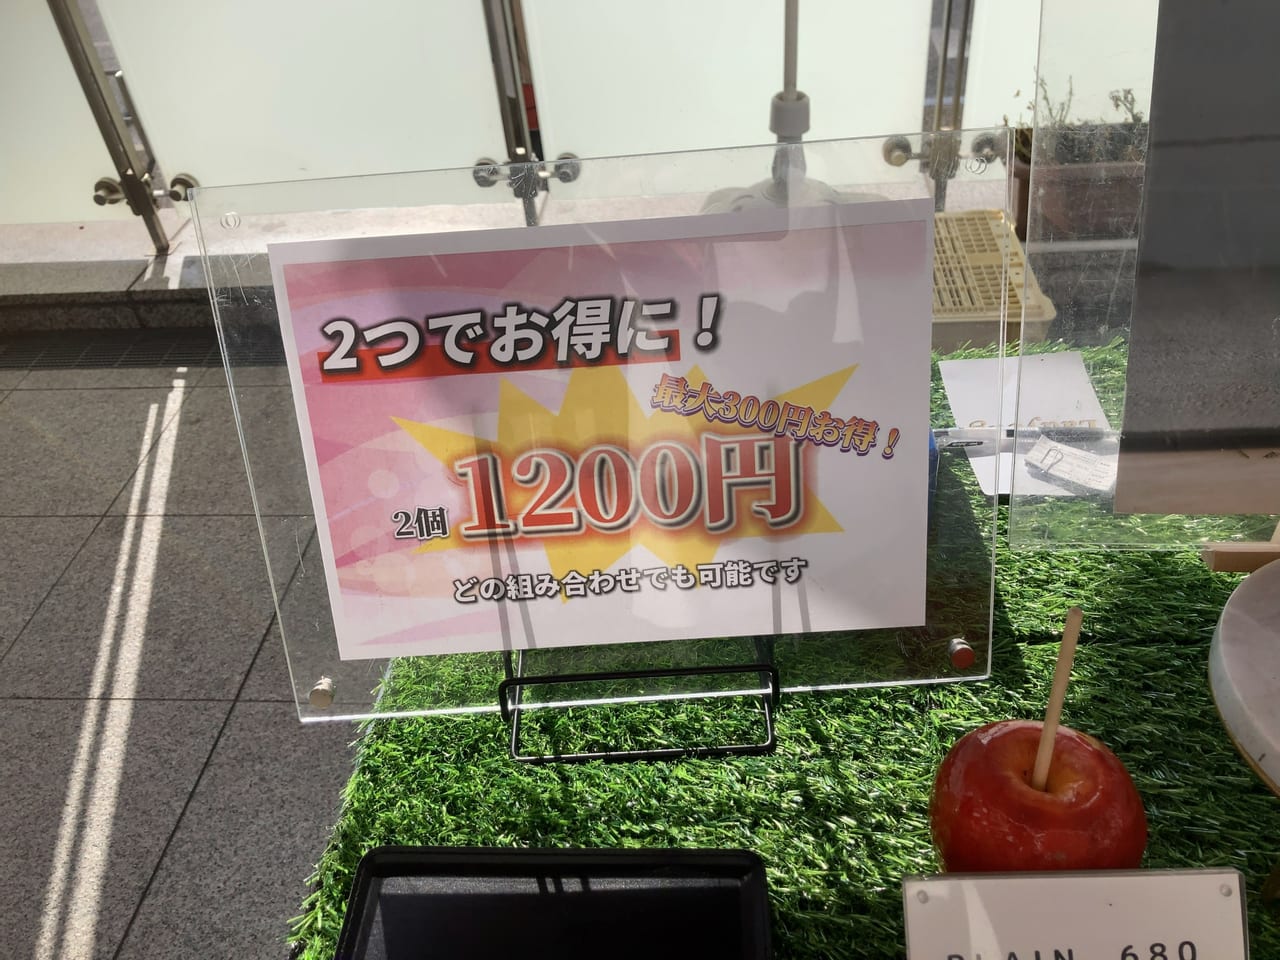 深夜のりんご飴屋さん・フルーツ飴専門店「Ladybug」が、2023年5月より不定期で週数日(1～2回程度)JR香椎駅で、りんご飴を販売しています。